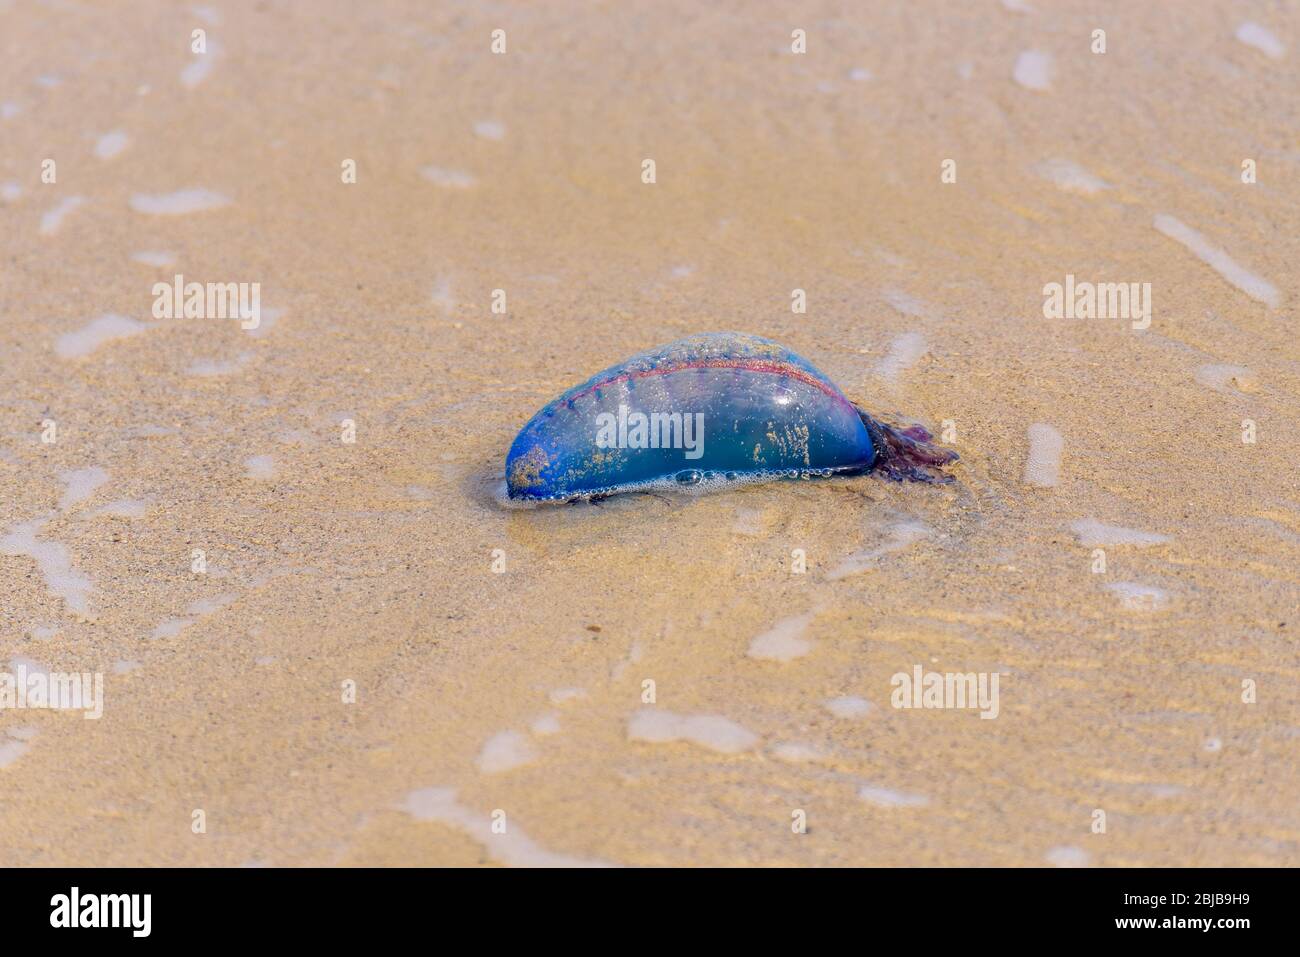 Le méduse de guerre de l'homme portugais mort (Physalia physalis) s'est lavé sur une plage de sable. Bluebottle sur le sable à Playas del Este, Cuba. Banque D'Images